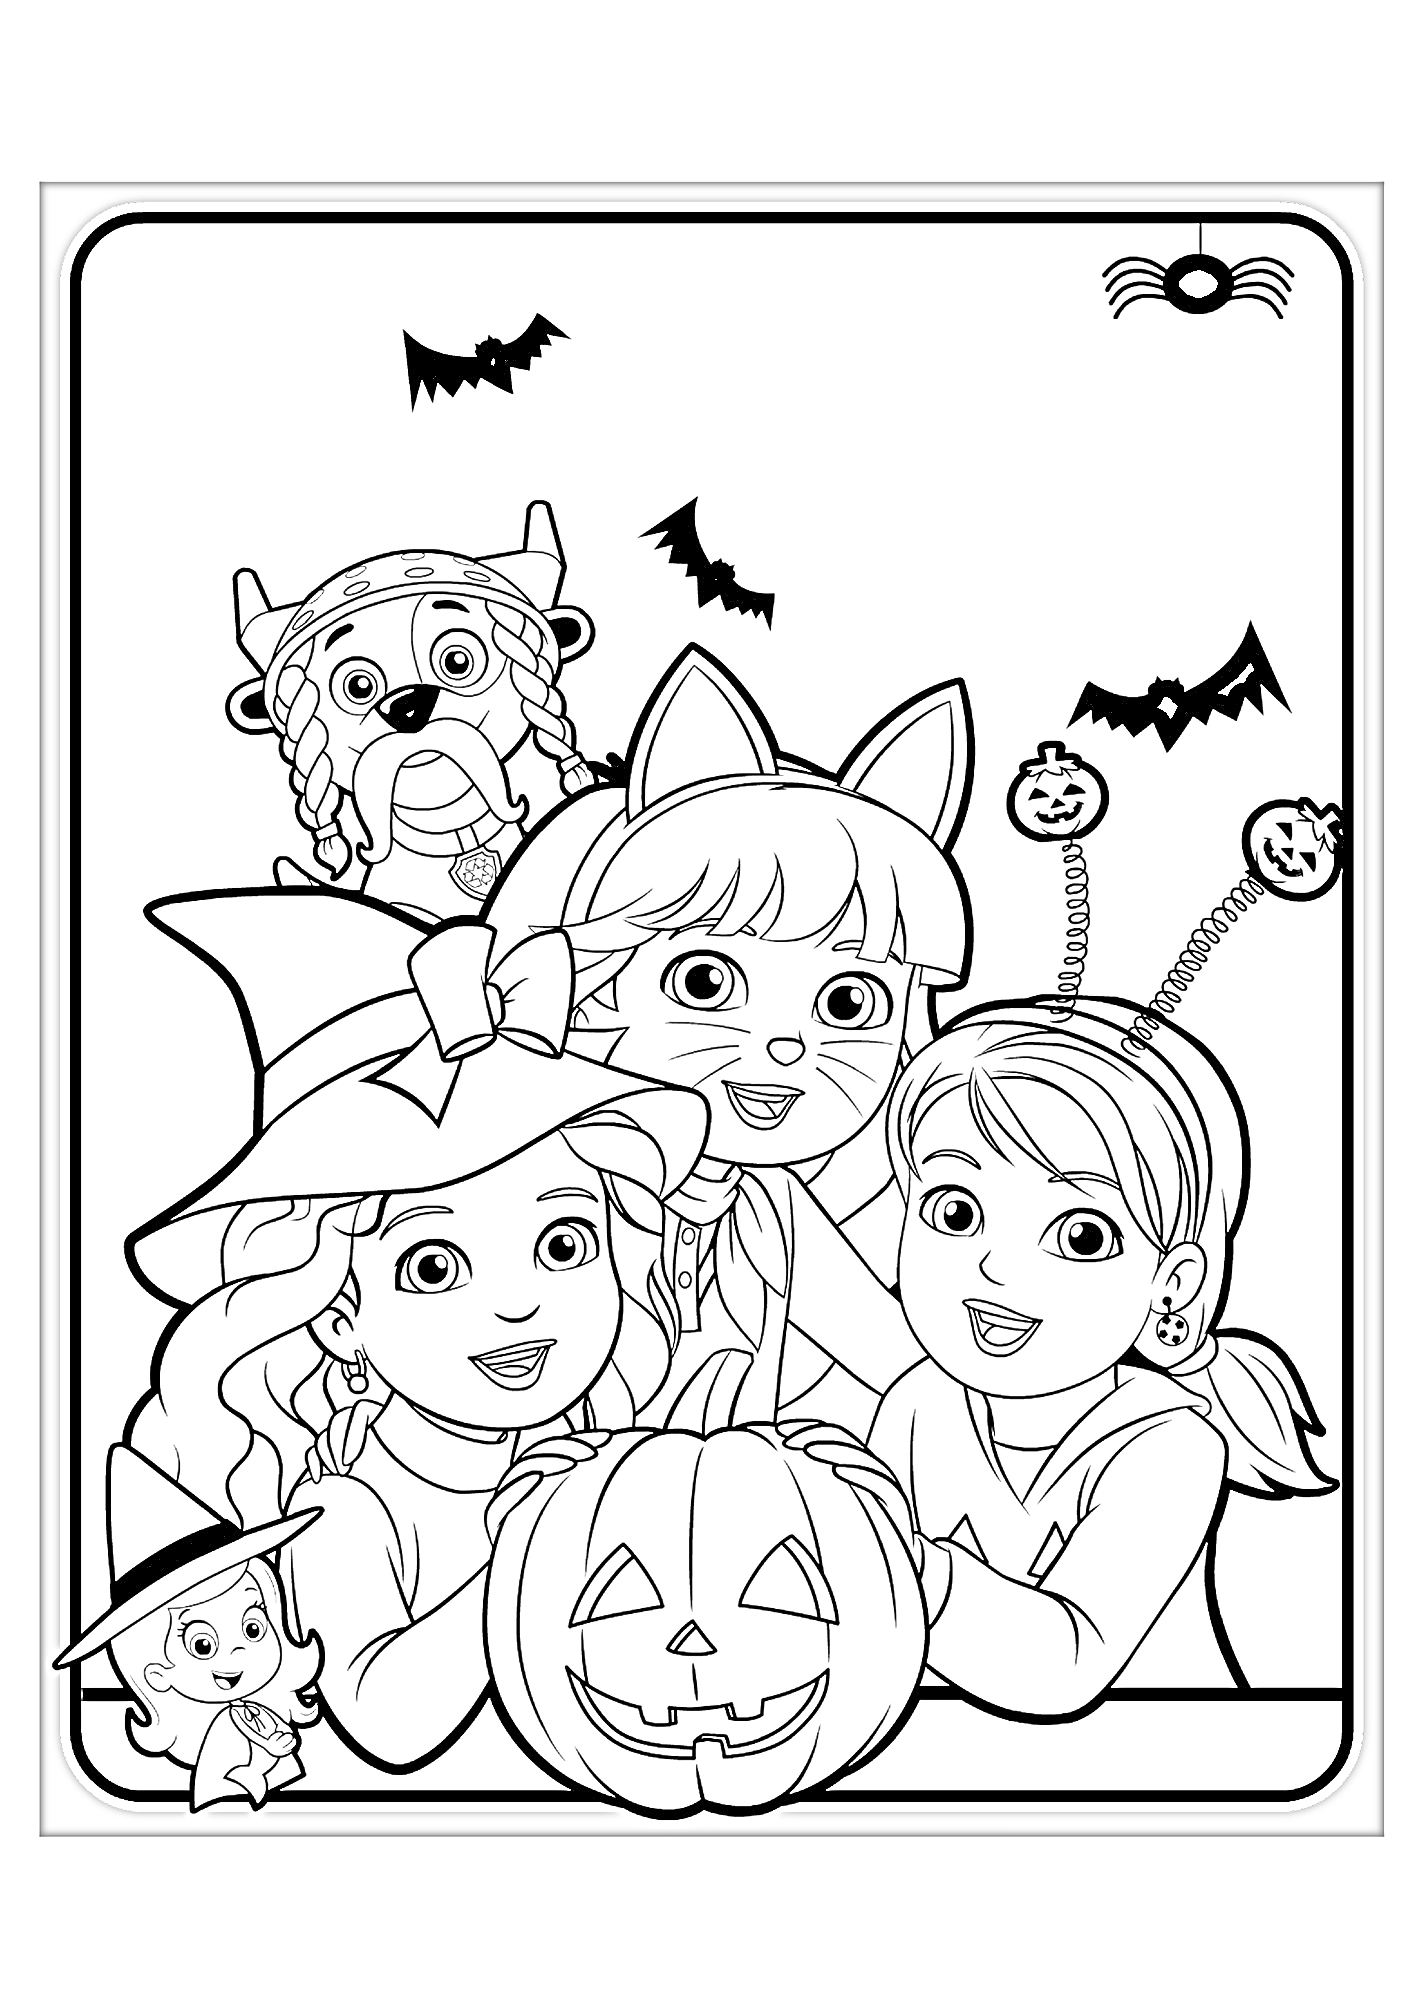 Раскраска Даша и друзья на Хэллоуин: костюмы ведьмы, кошки, маленького вампира и тыква фонарик, летучие мыши и паук на паутине